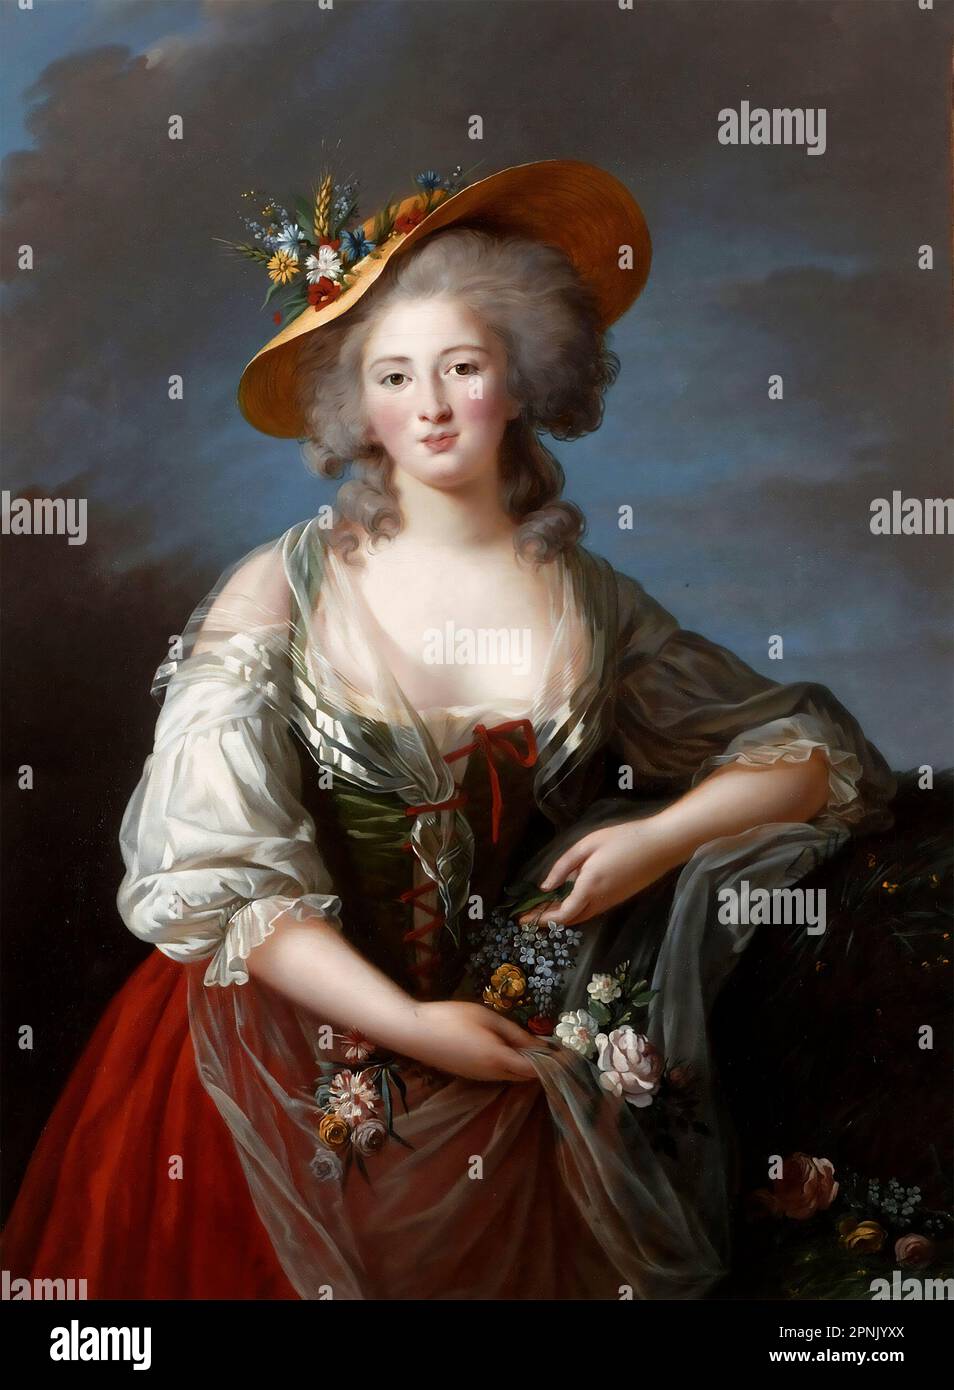 Elisabeth-Philippe-Marie-Hélène de France, said Madame Elisabeth by Élisabeth Vigée Le Brun (1755-1842), oil on canvas, 1782 Stock Photo